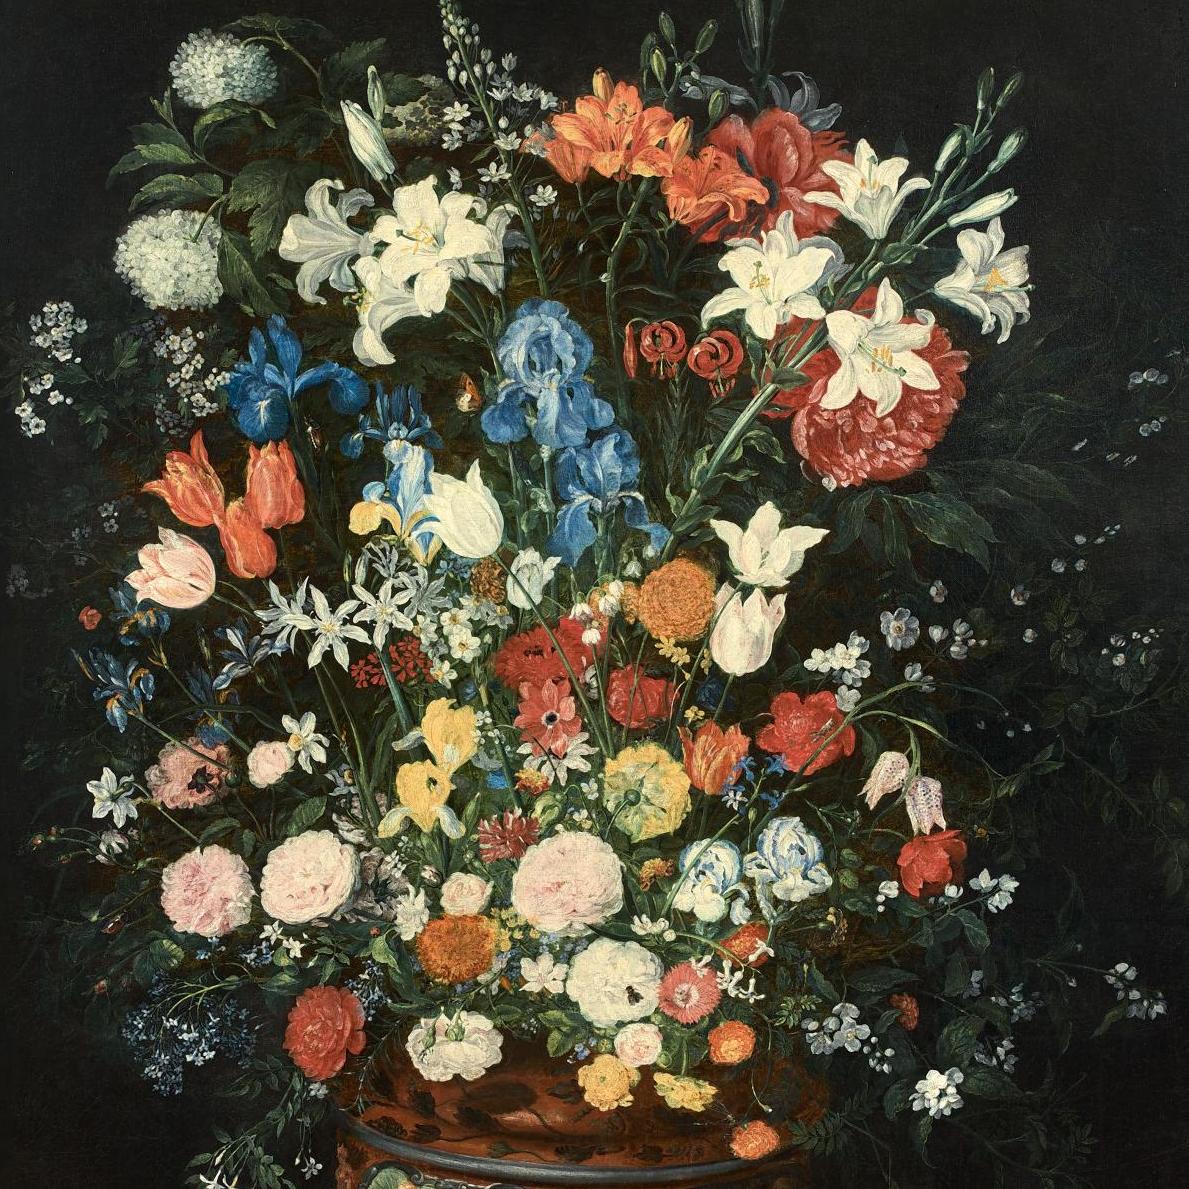 Bruegel père et fils, peintres de fleurs  - Zoom